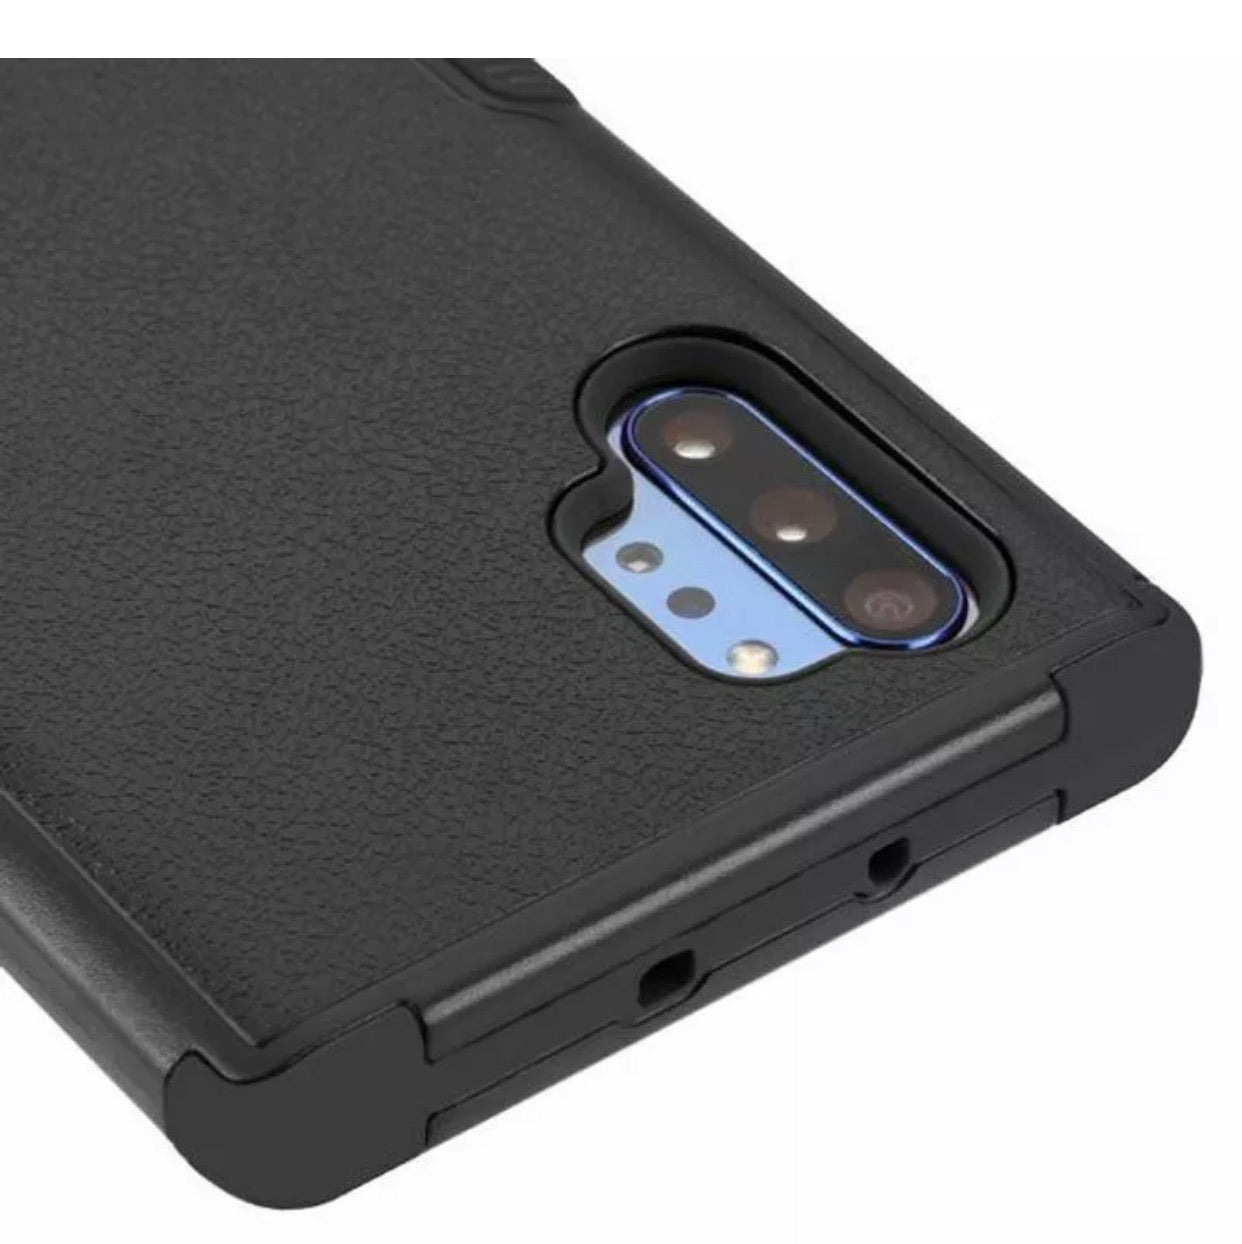 Samsung Galaxy Note 10+ Premium Hybrid Case